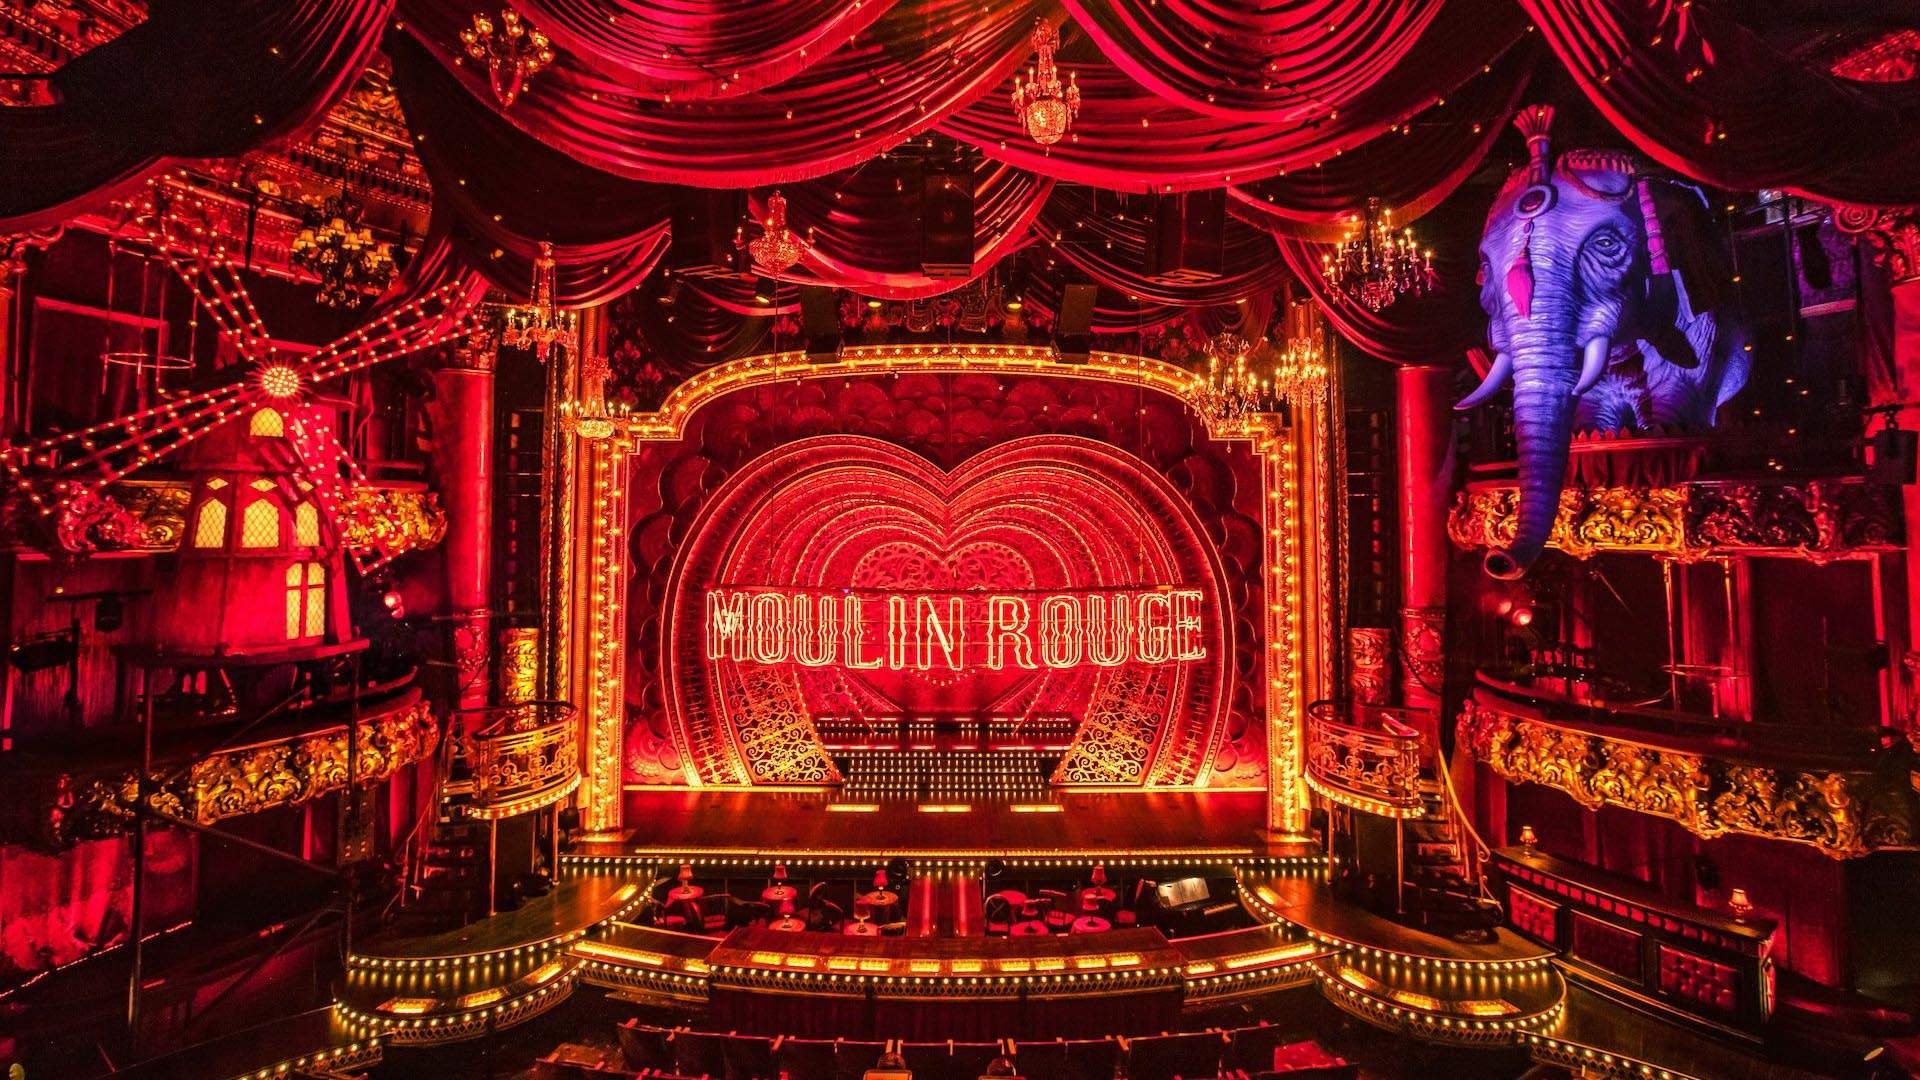 Moulin Rouge, Spectacular musical, Baz Luhrmann, Bohemian revolution, 1920x1080 Full HD Desktop